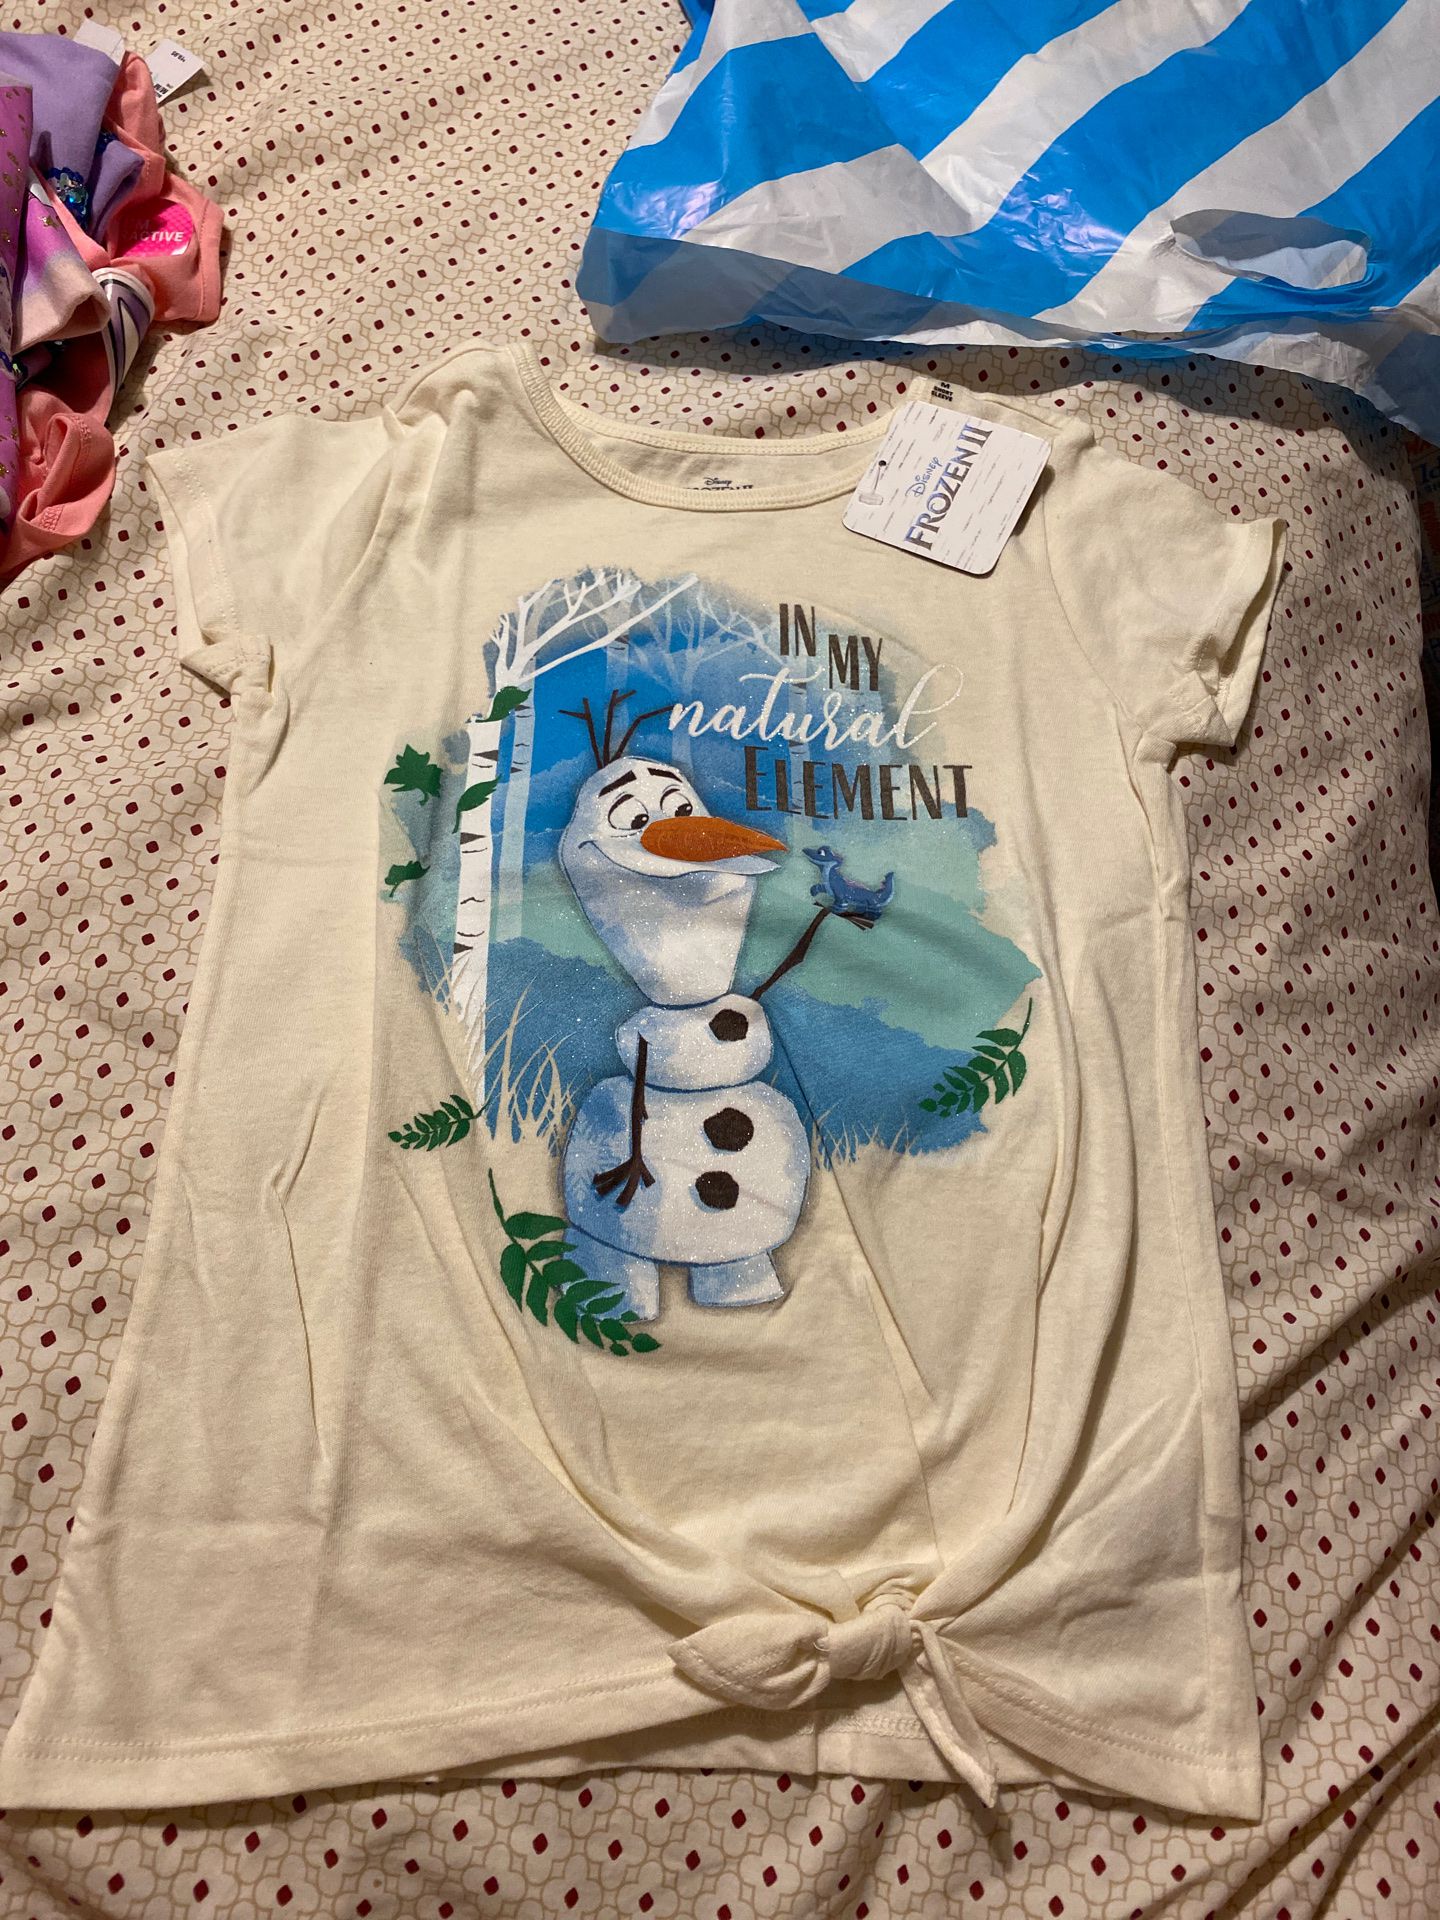 Disney Olaf shirt